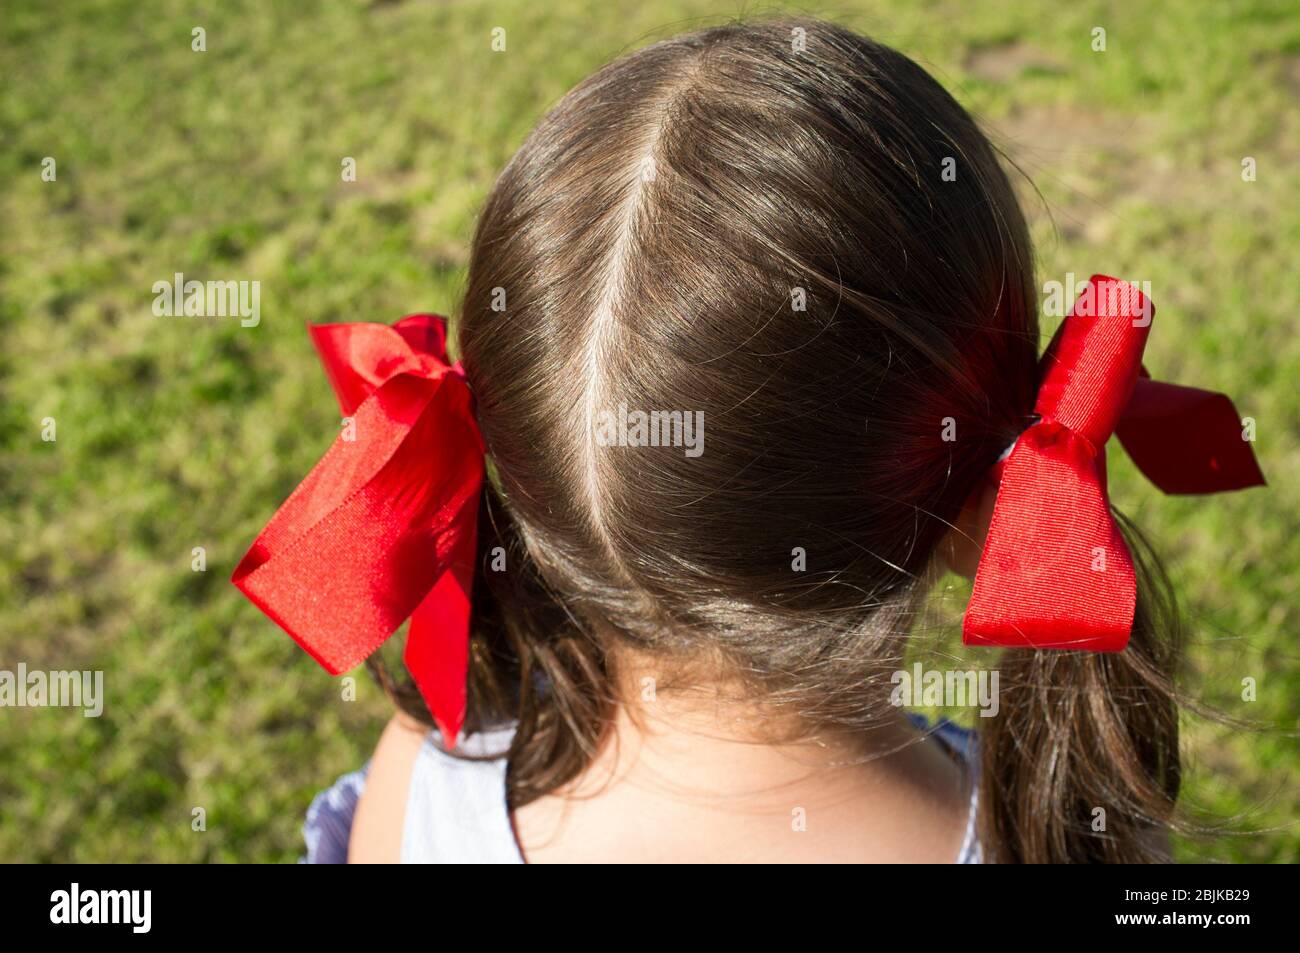 Testa della bambina con capelli a prua di nastro rosso sulle sue pigtail. Scatto dall'alto. Foto Stock